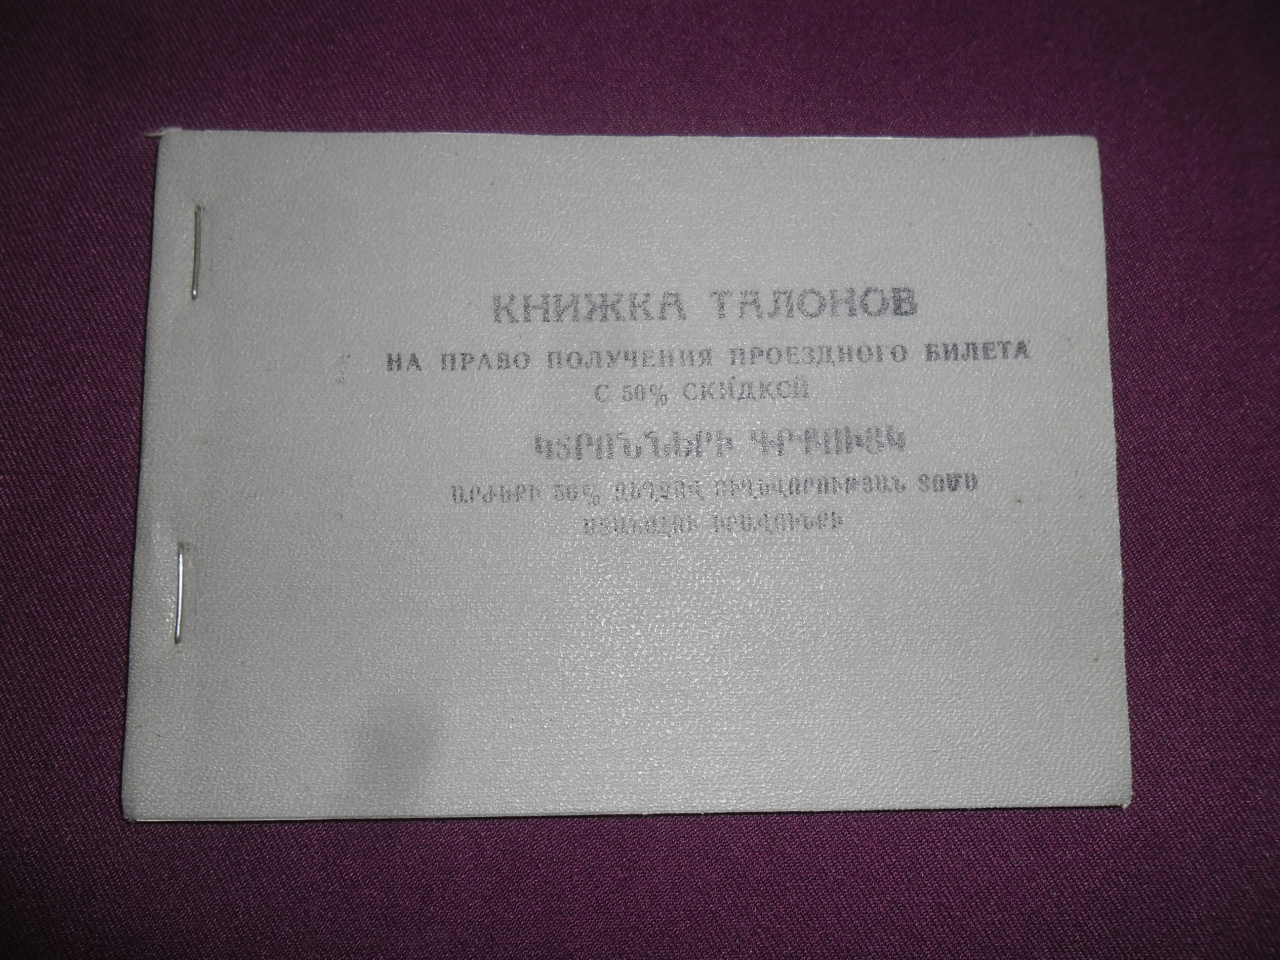 Կտրոնների գրքույկ՝ Կոլյա Սիմոնի Ղայֆաչյանի ( Հնոցապան, ջրմուղ կոյուղու մասնագետ, կարմիր պարտիզան)